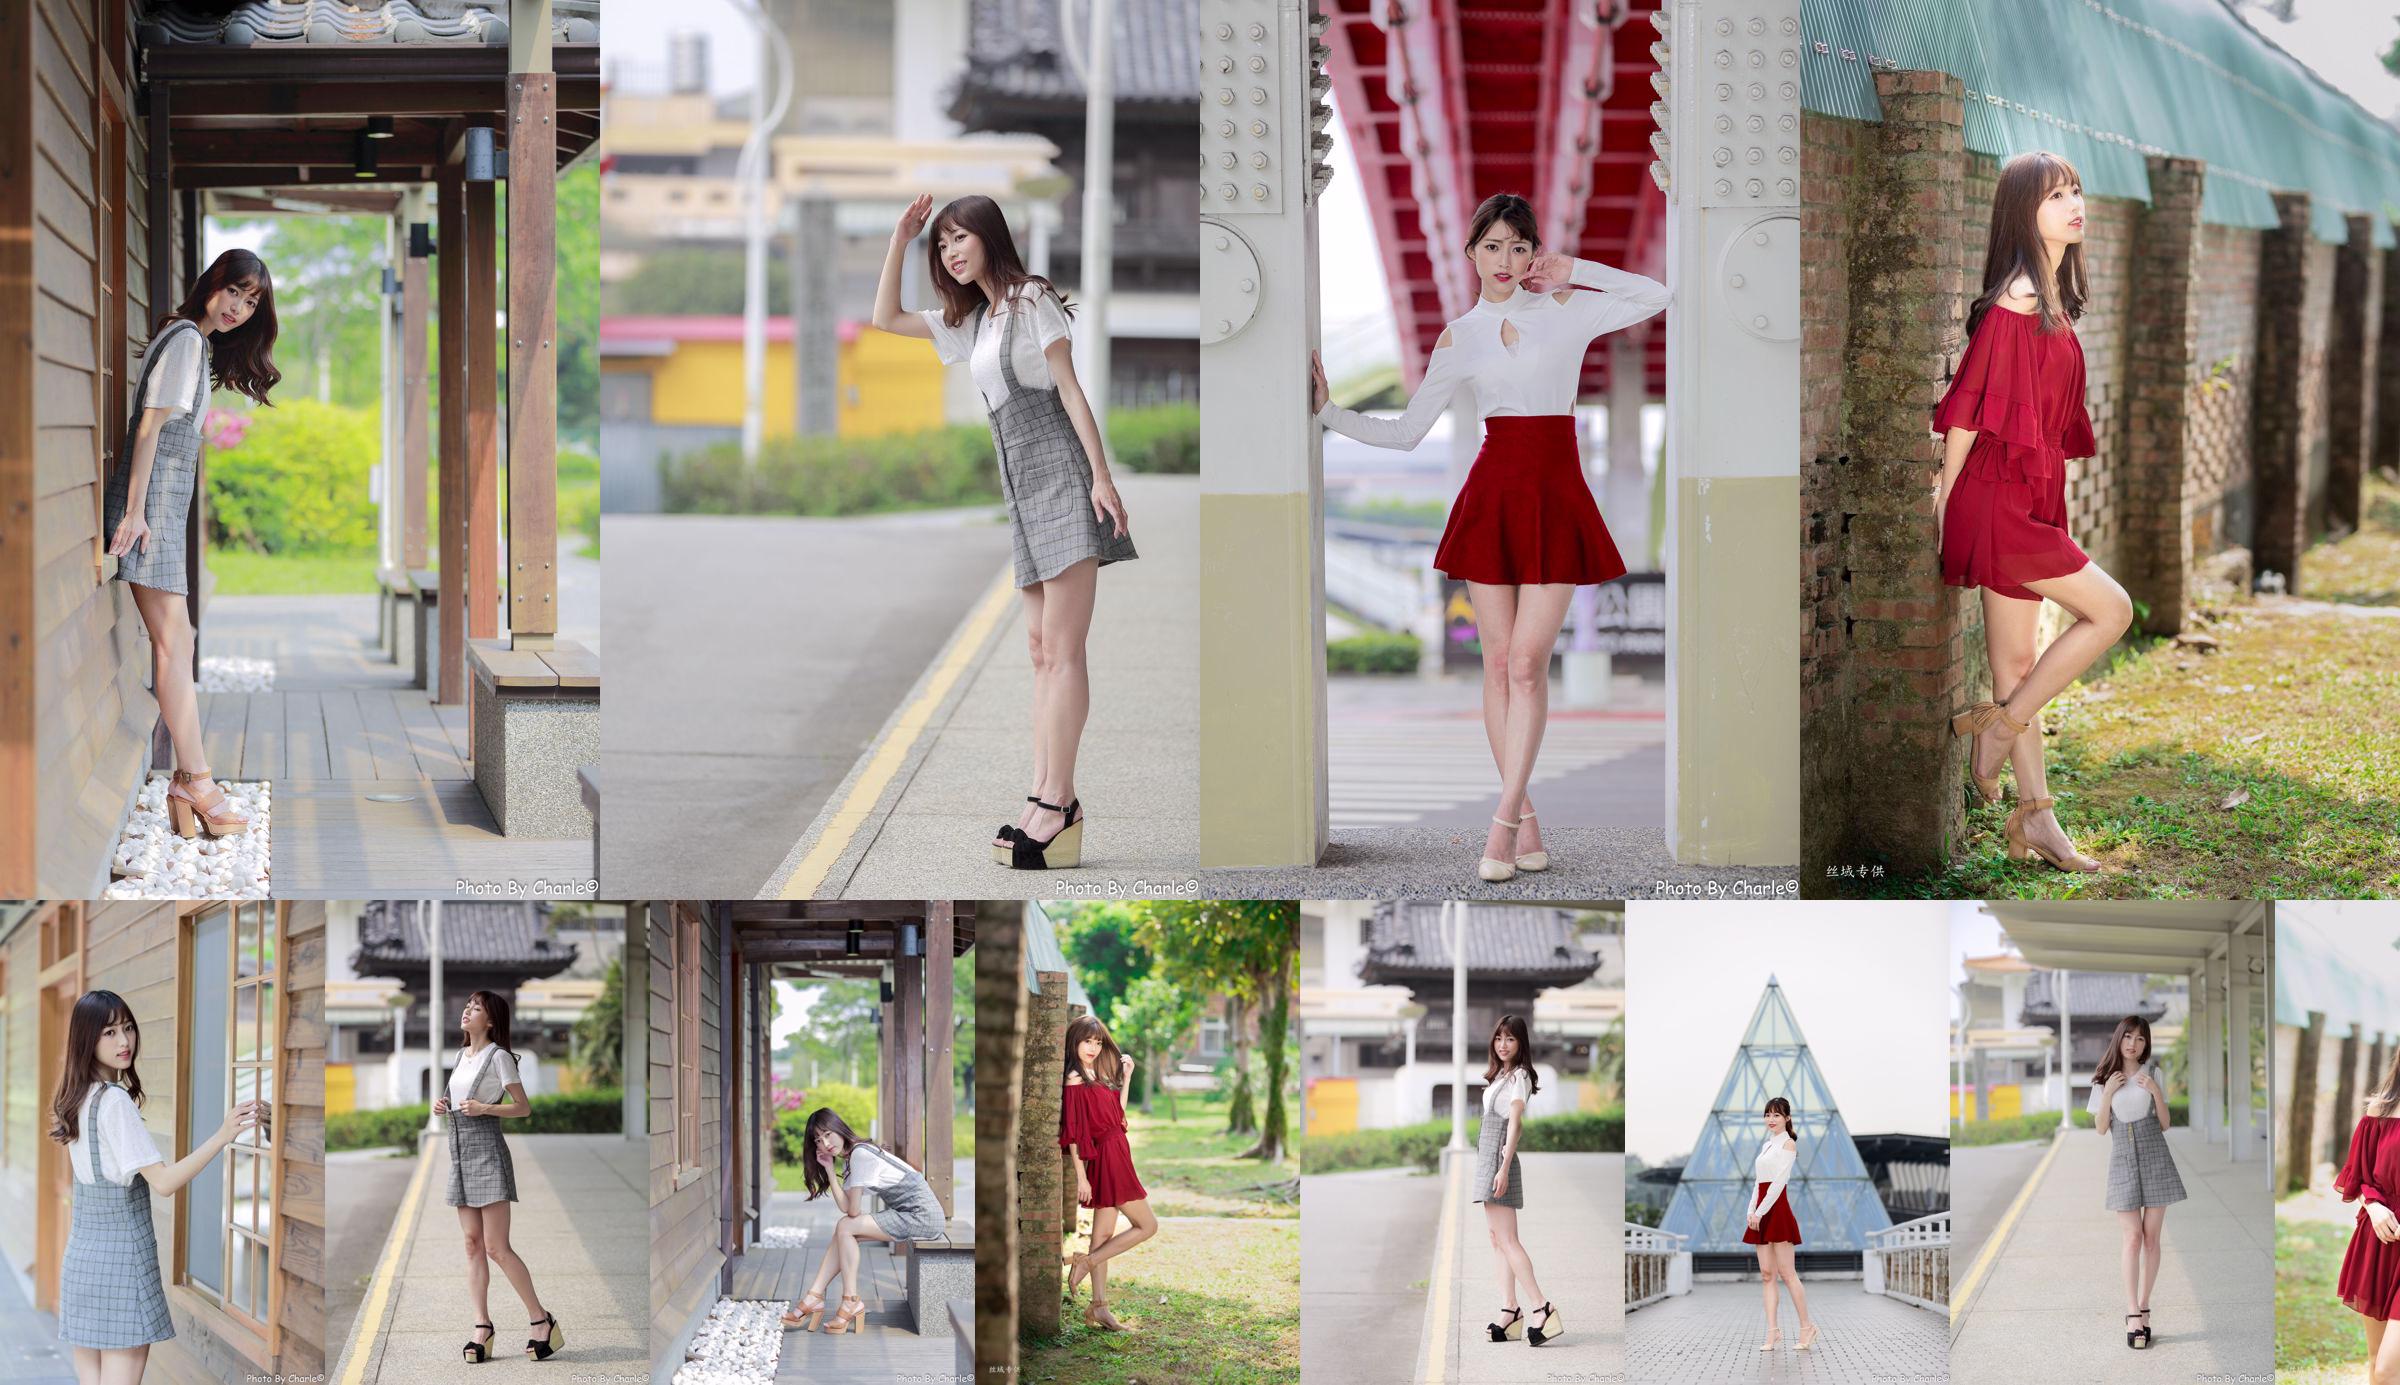 [Taiwanese model] Peng Lijia (Lady Yiyi) "Outside Shooting of Yuanshan Flower Expo" No.04979c Page 1